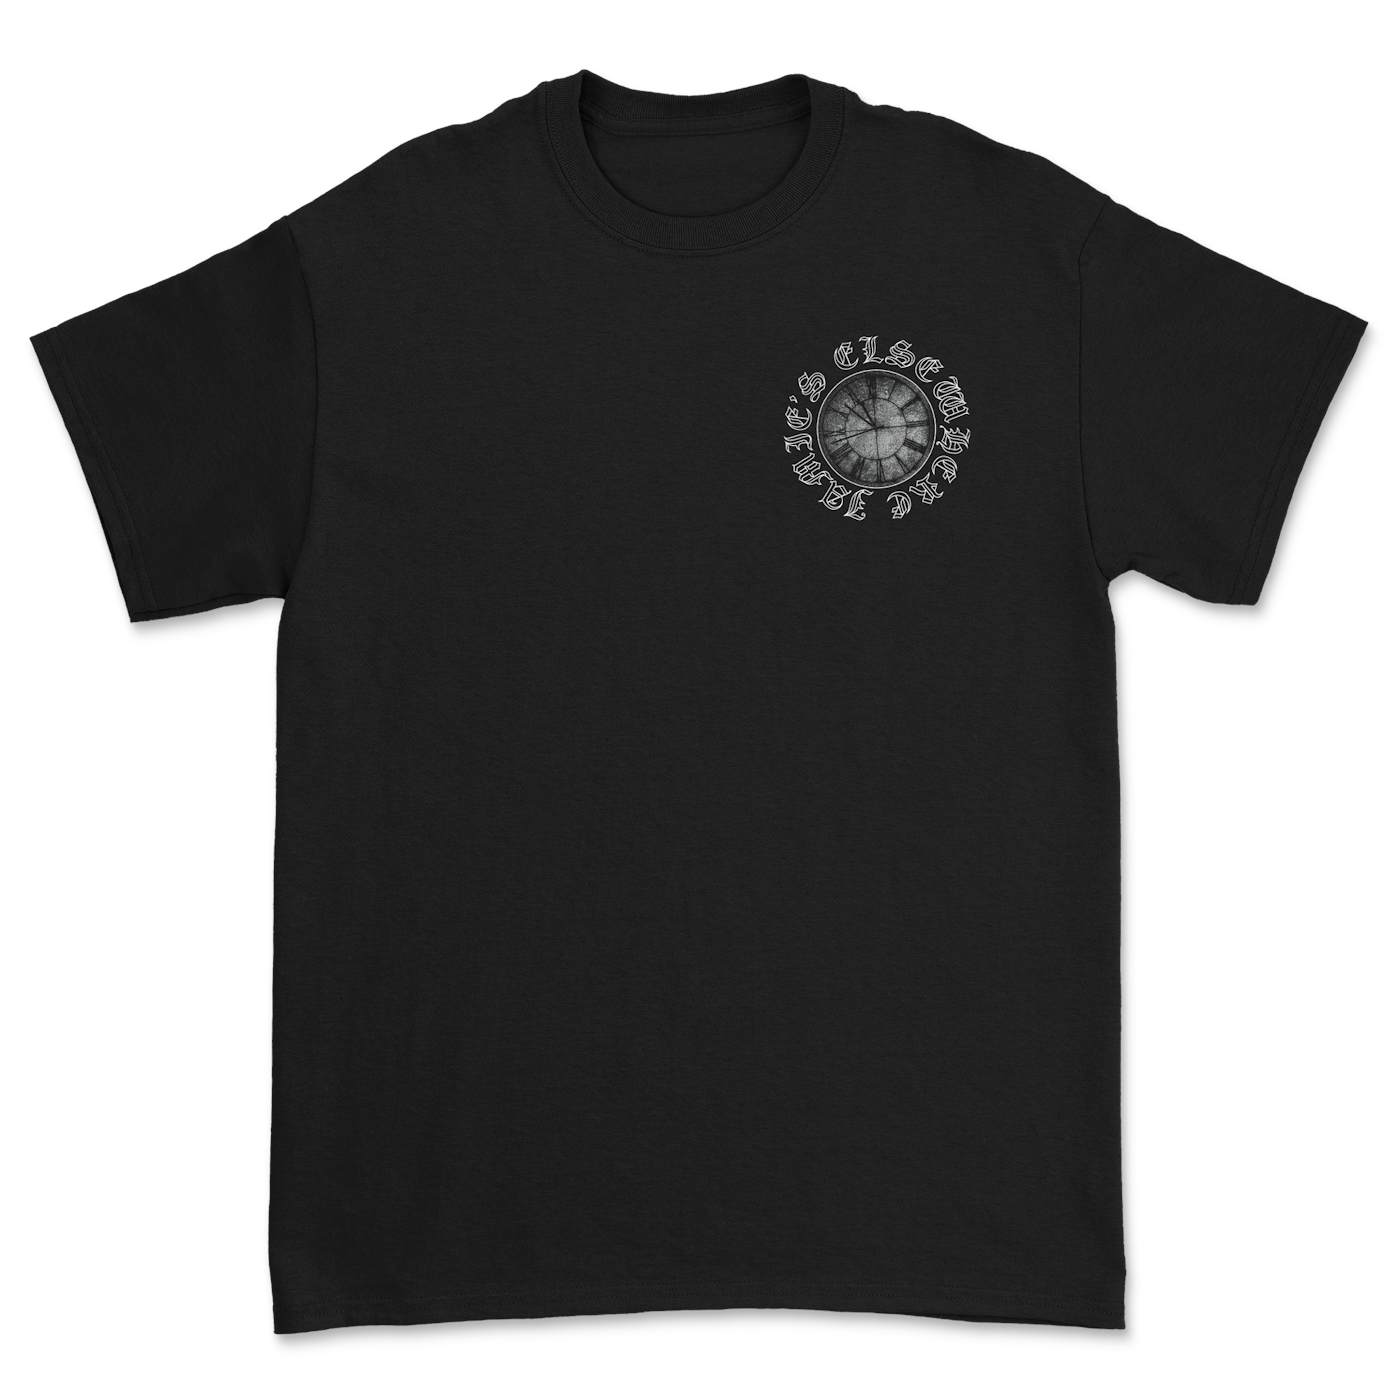 Jamie's Elsewhere - Clocks T-Shirt